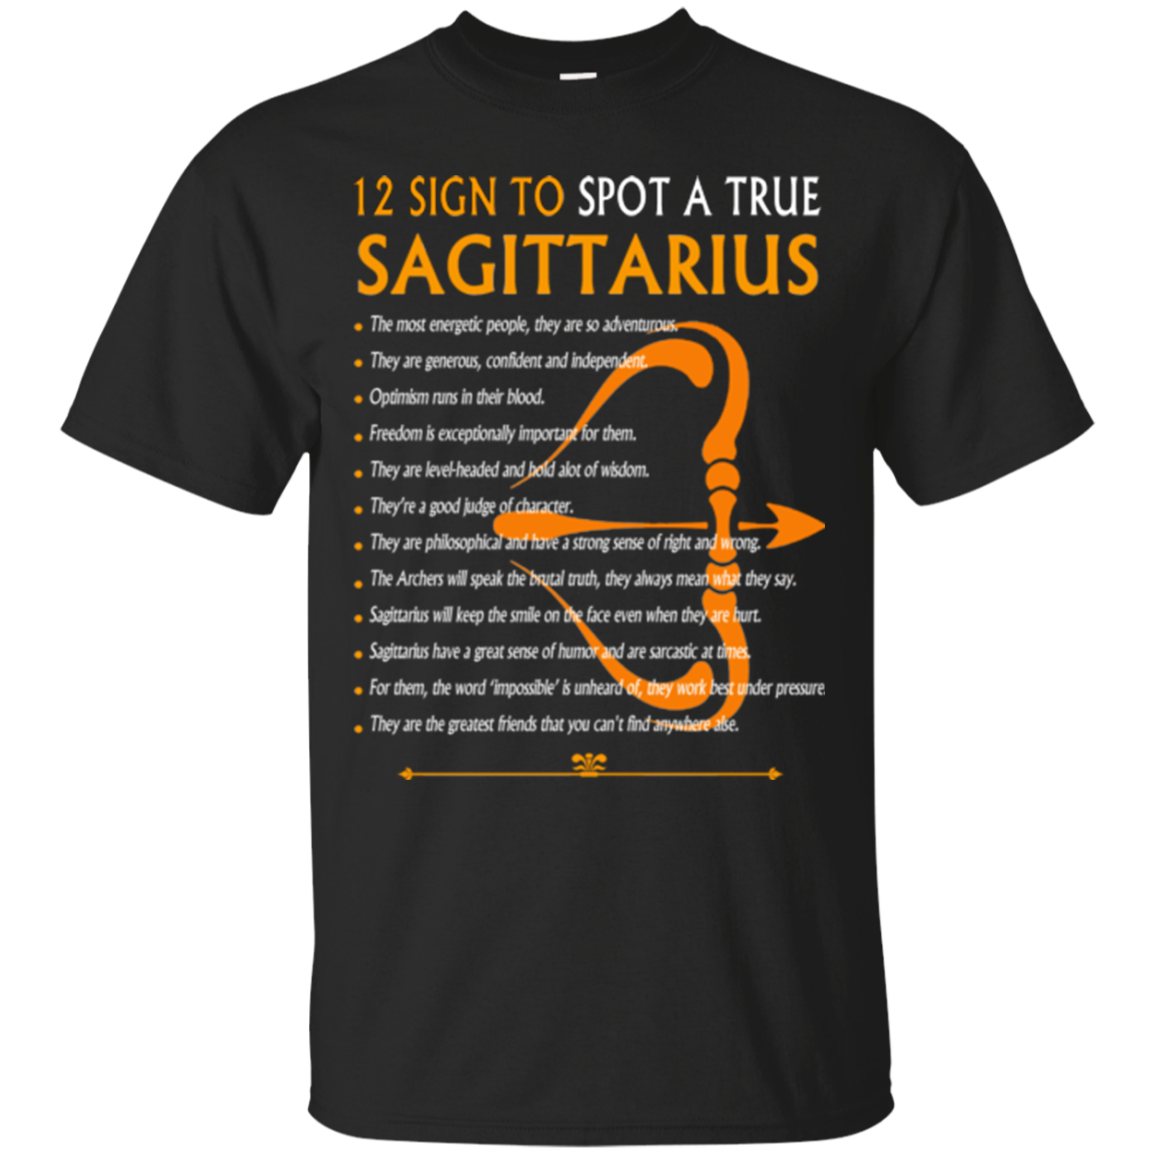 Sagittarius Shirts 12 Sign To Spot - Teesmiley